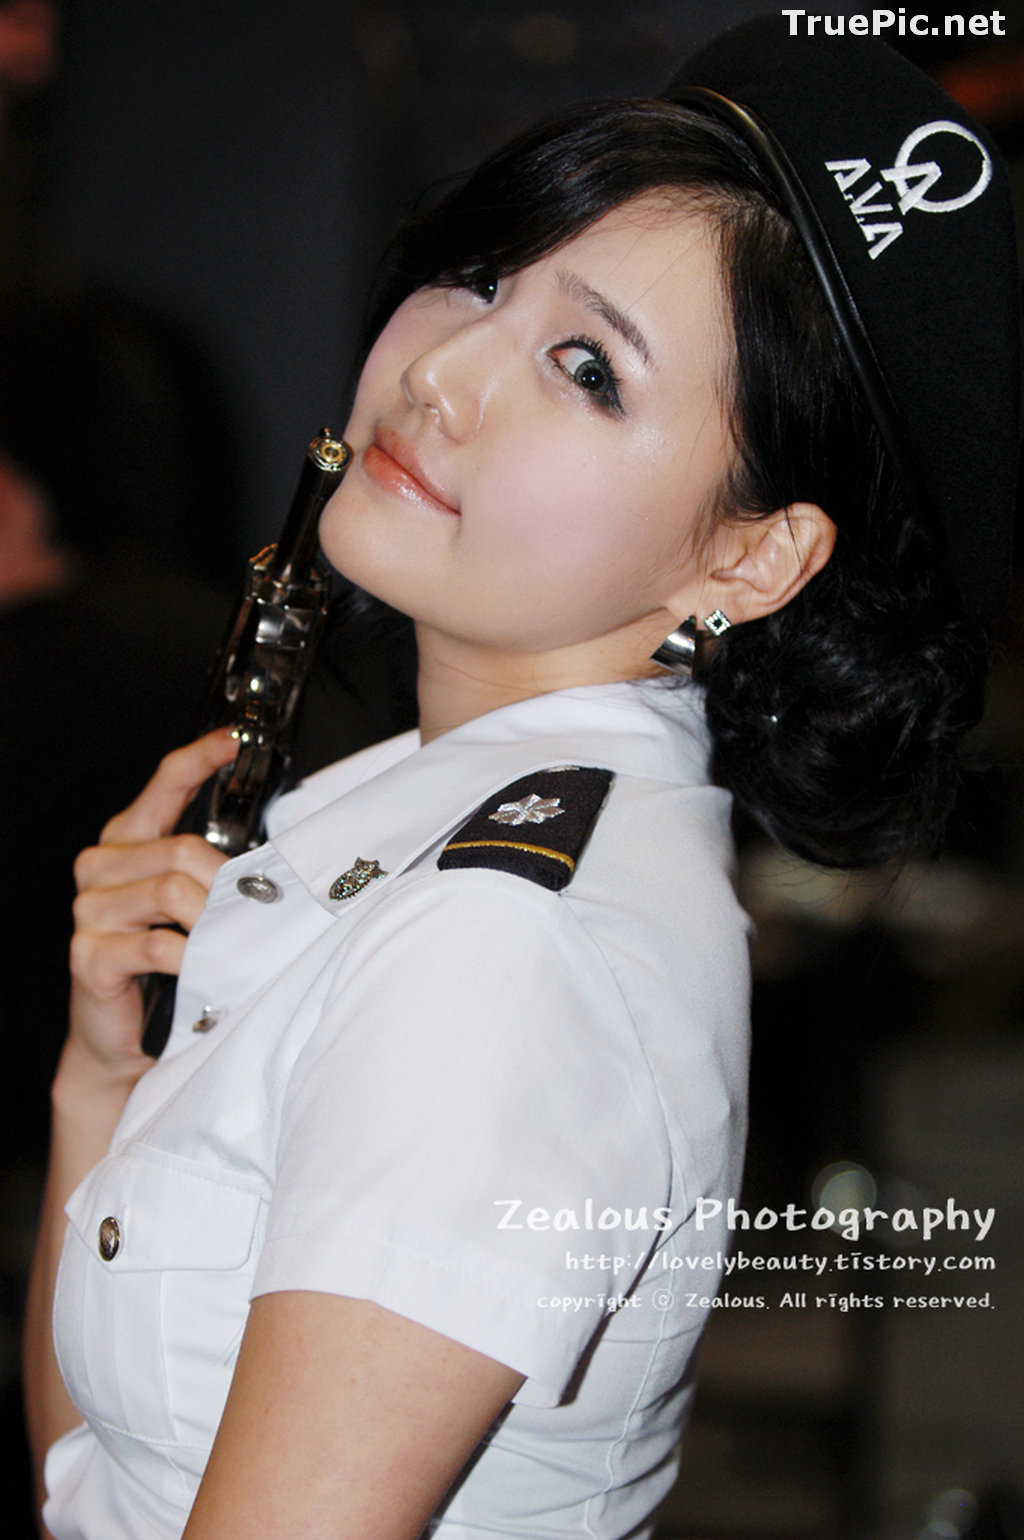 Image Best Beautiful Images Of Korean Racing Queen Han Ga Eun #2 - TruePic.net - Picture-41